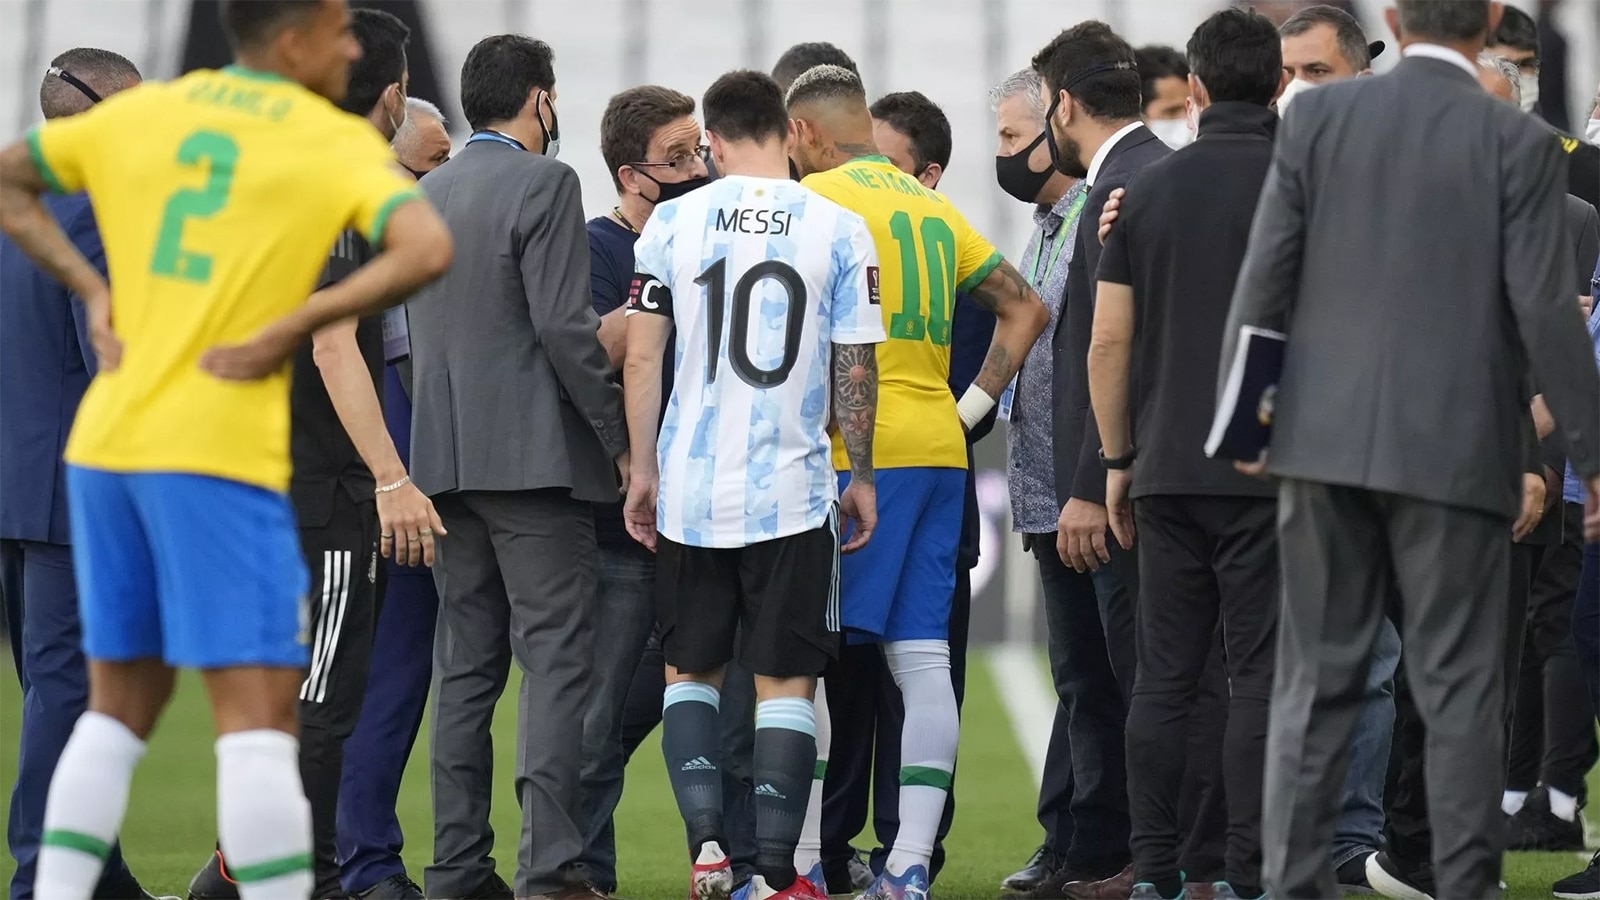 الاتحاد الدولي لكرة القدم “فيفا” يقرر رسميًا إعادة مباراة البرازيل والأرجنتين في تصفيات أمريكا الجنوبية المؤهلة لكأس العالم بقطر 2022